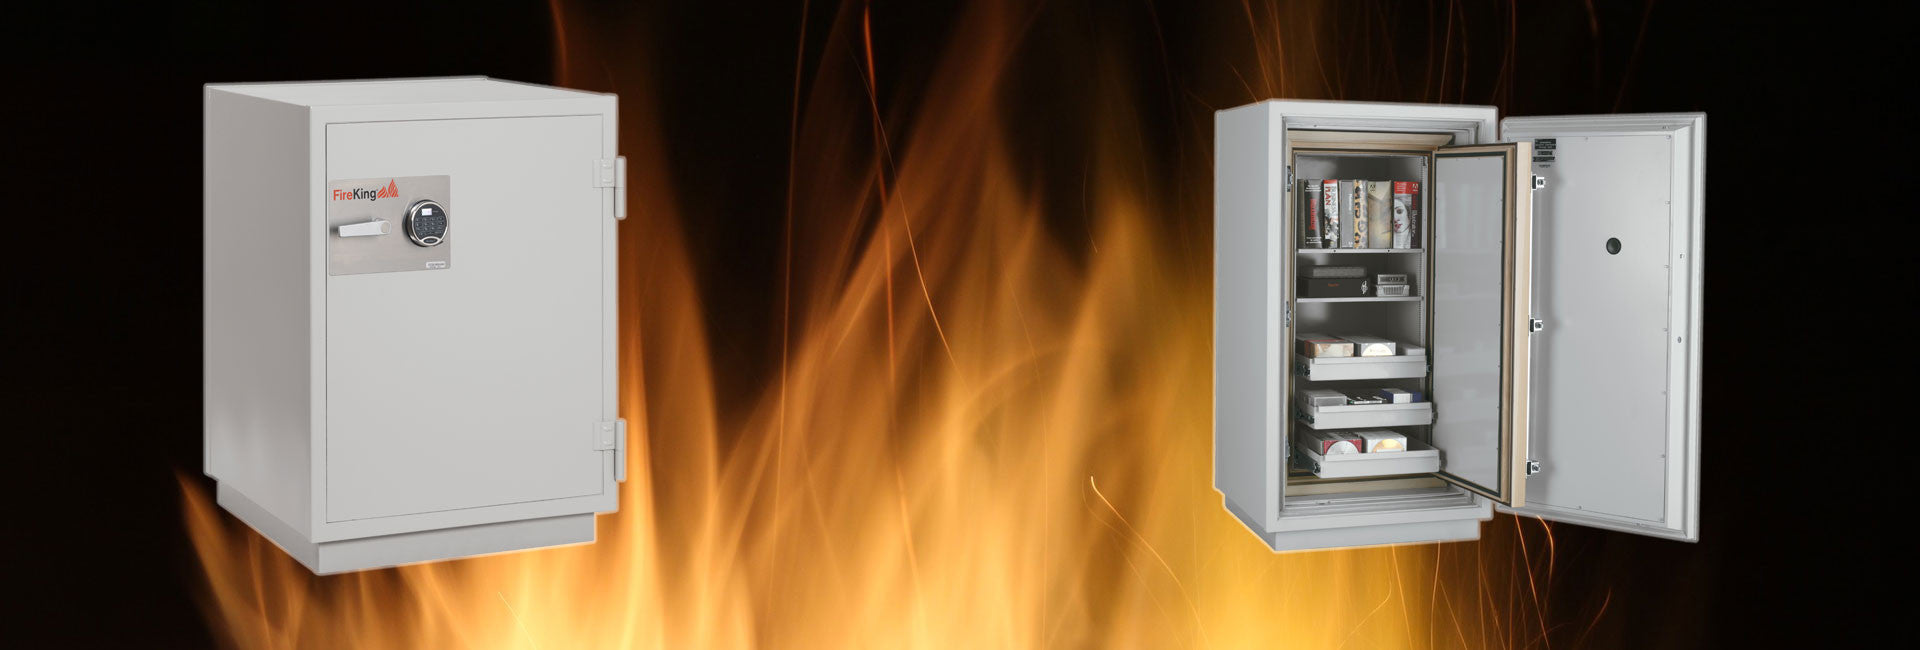 FireKing Fireproof Data Safes